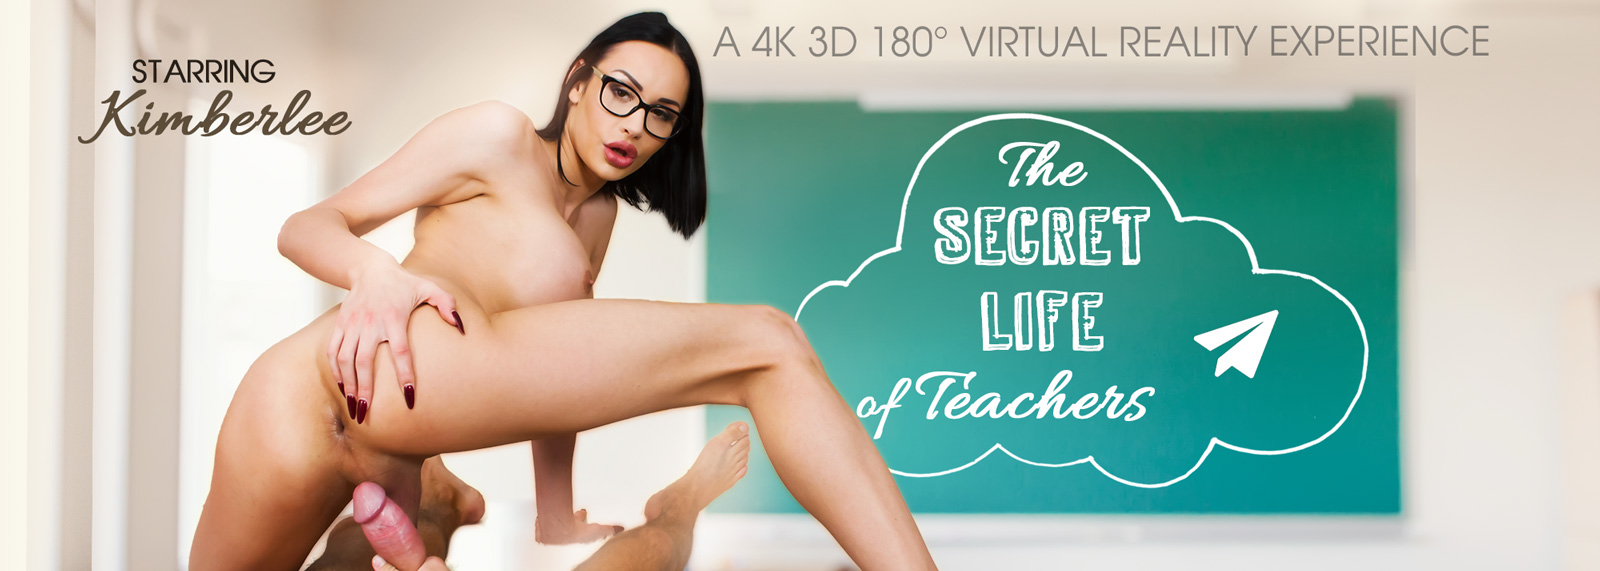 The Secret Life of Teachers - Trans VR Porn Video, Starring: Kimber Lee